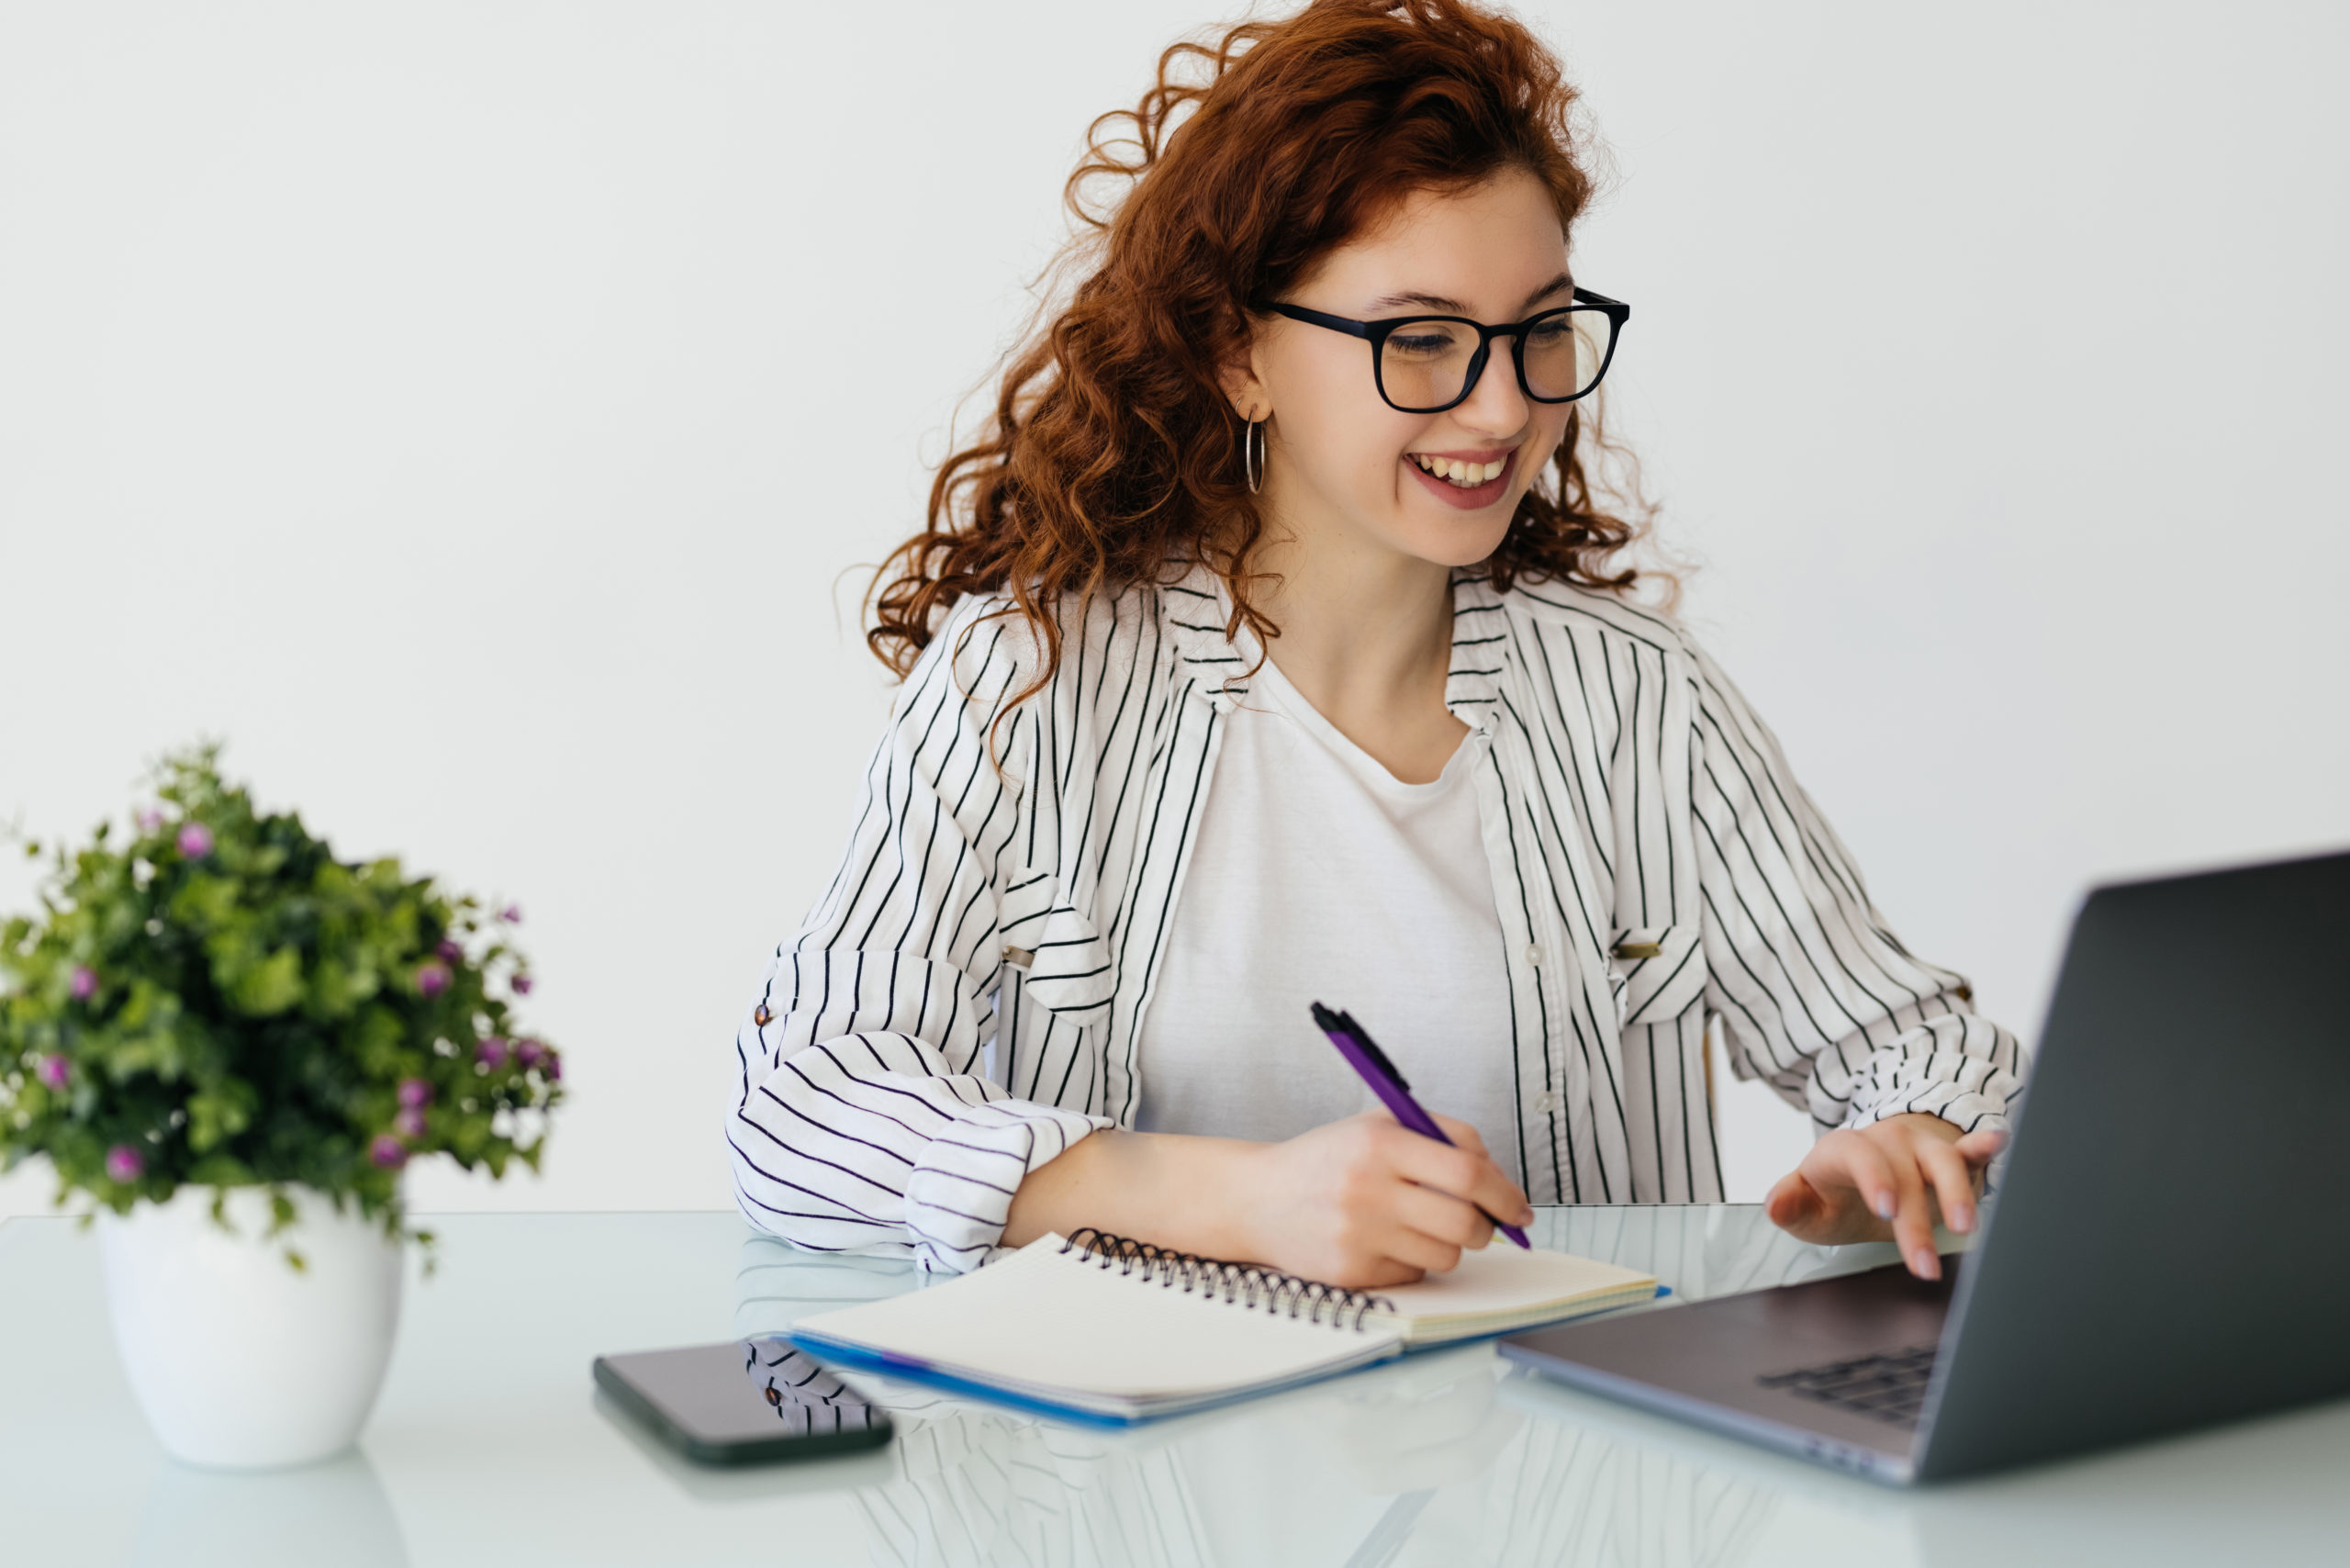 roodharige vrouw met bril analyseert documenten met een rekenmachine op een laptop aan een wit bureau